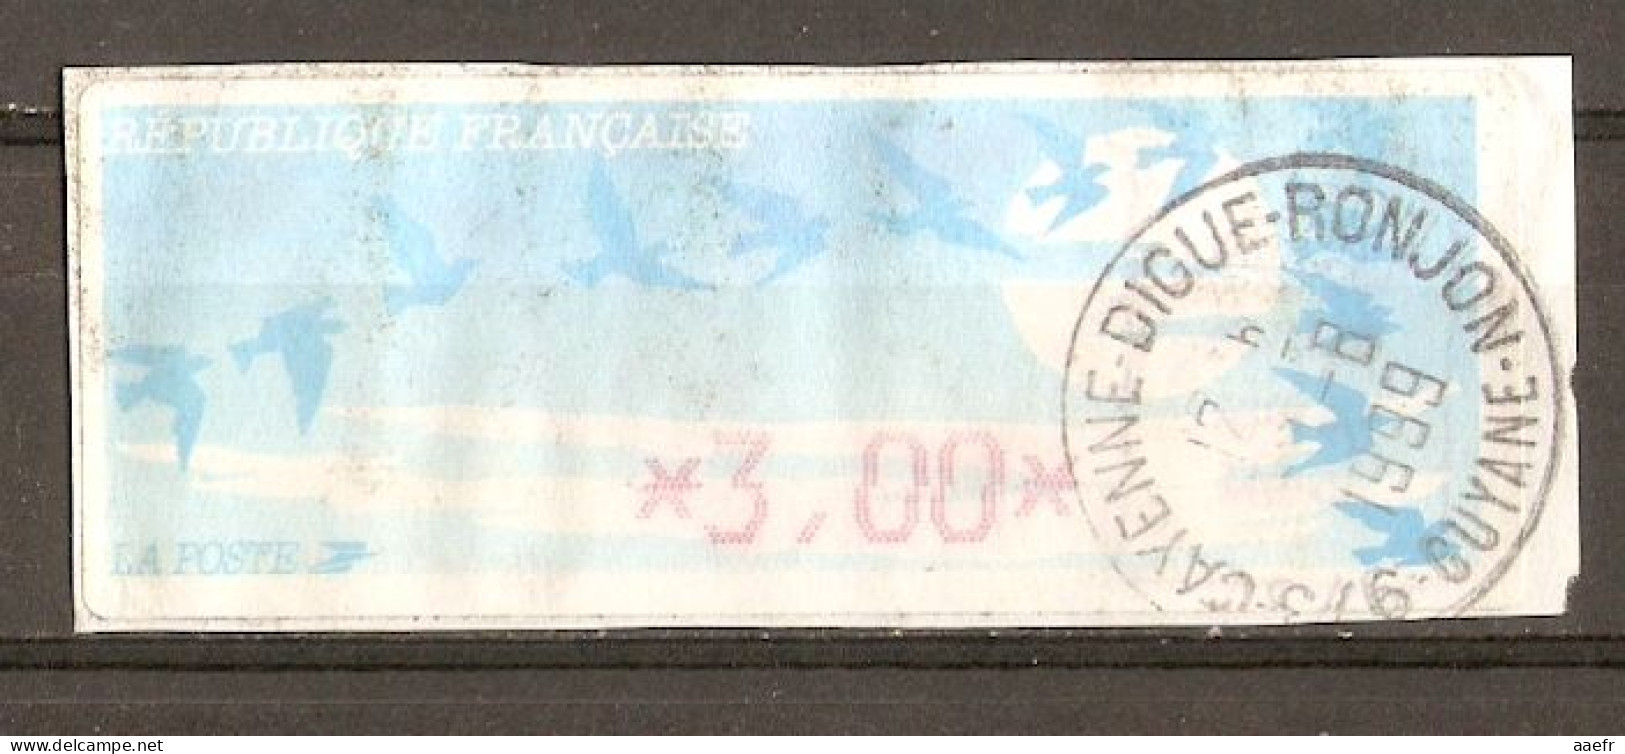 France - Guyane 1999 - Vignette ATM Type Oiseaux De Joubert - Cayenne - Digue-Ronjon - 1990 Type « Oiseaux De Jubert »